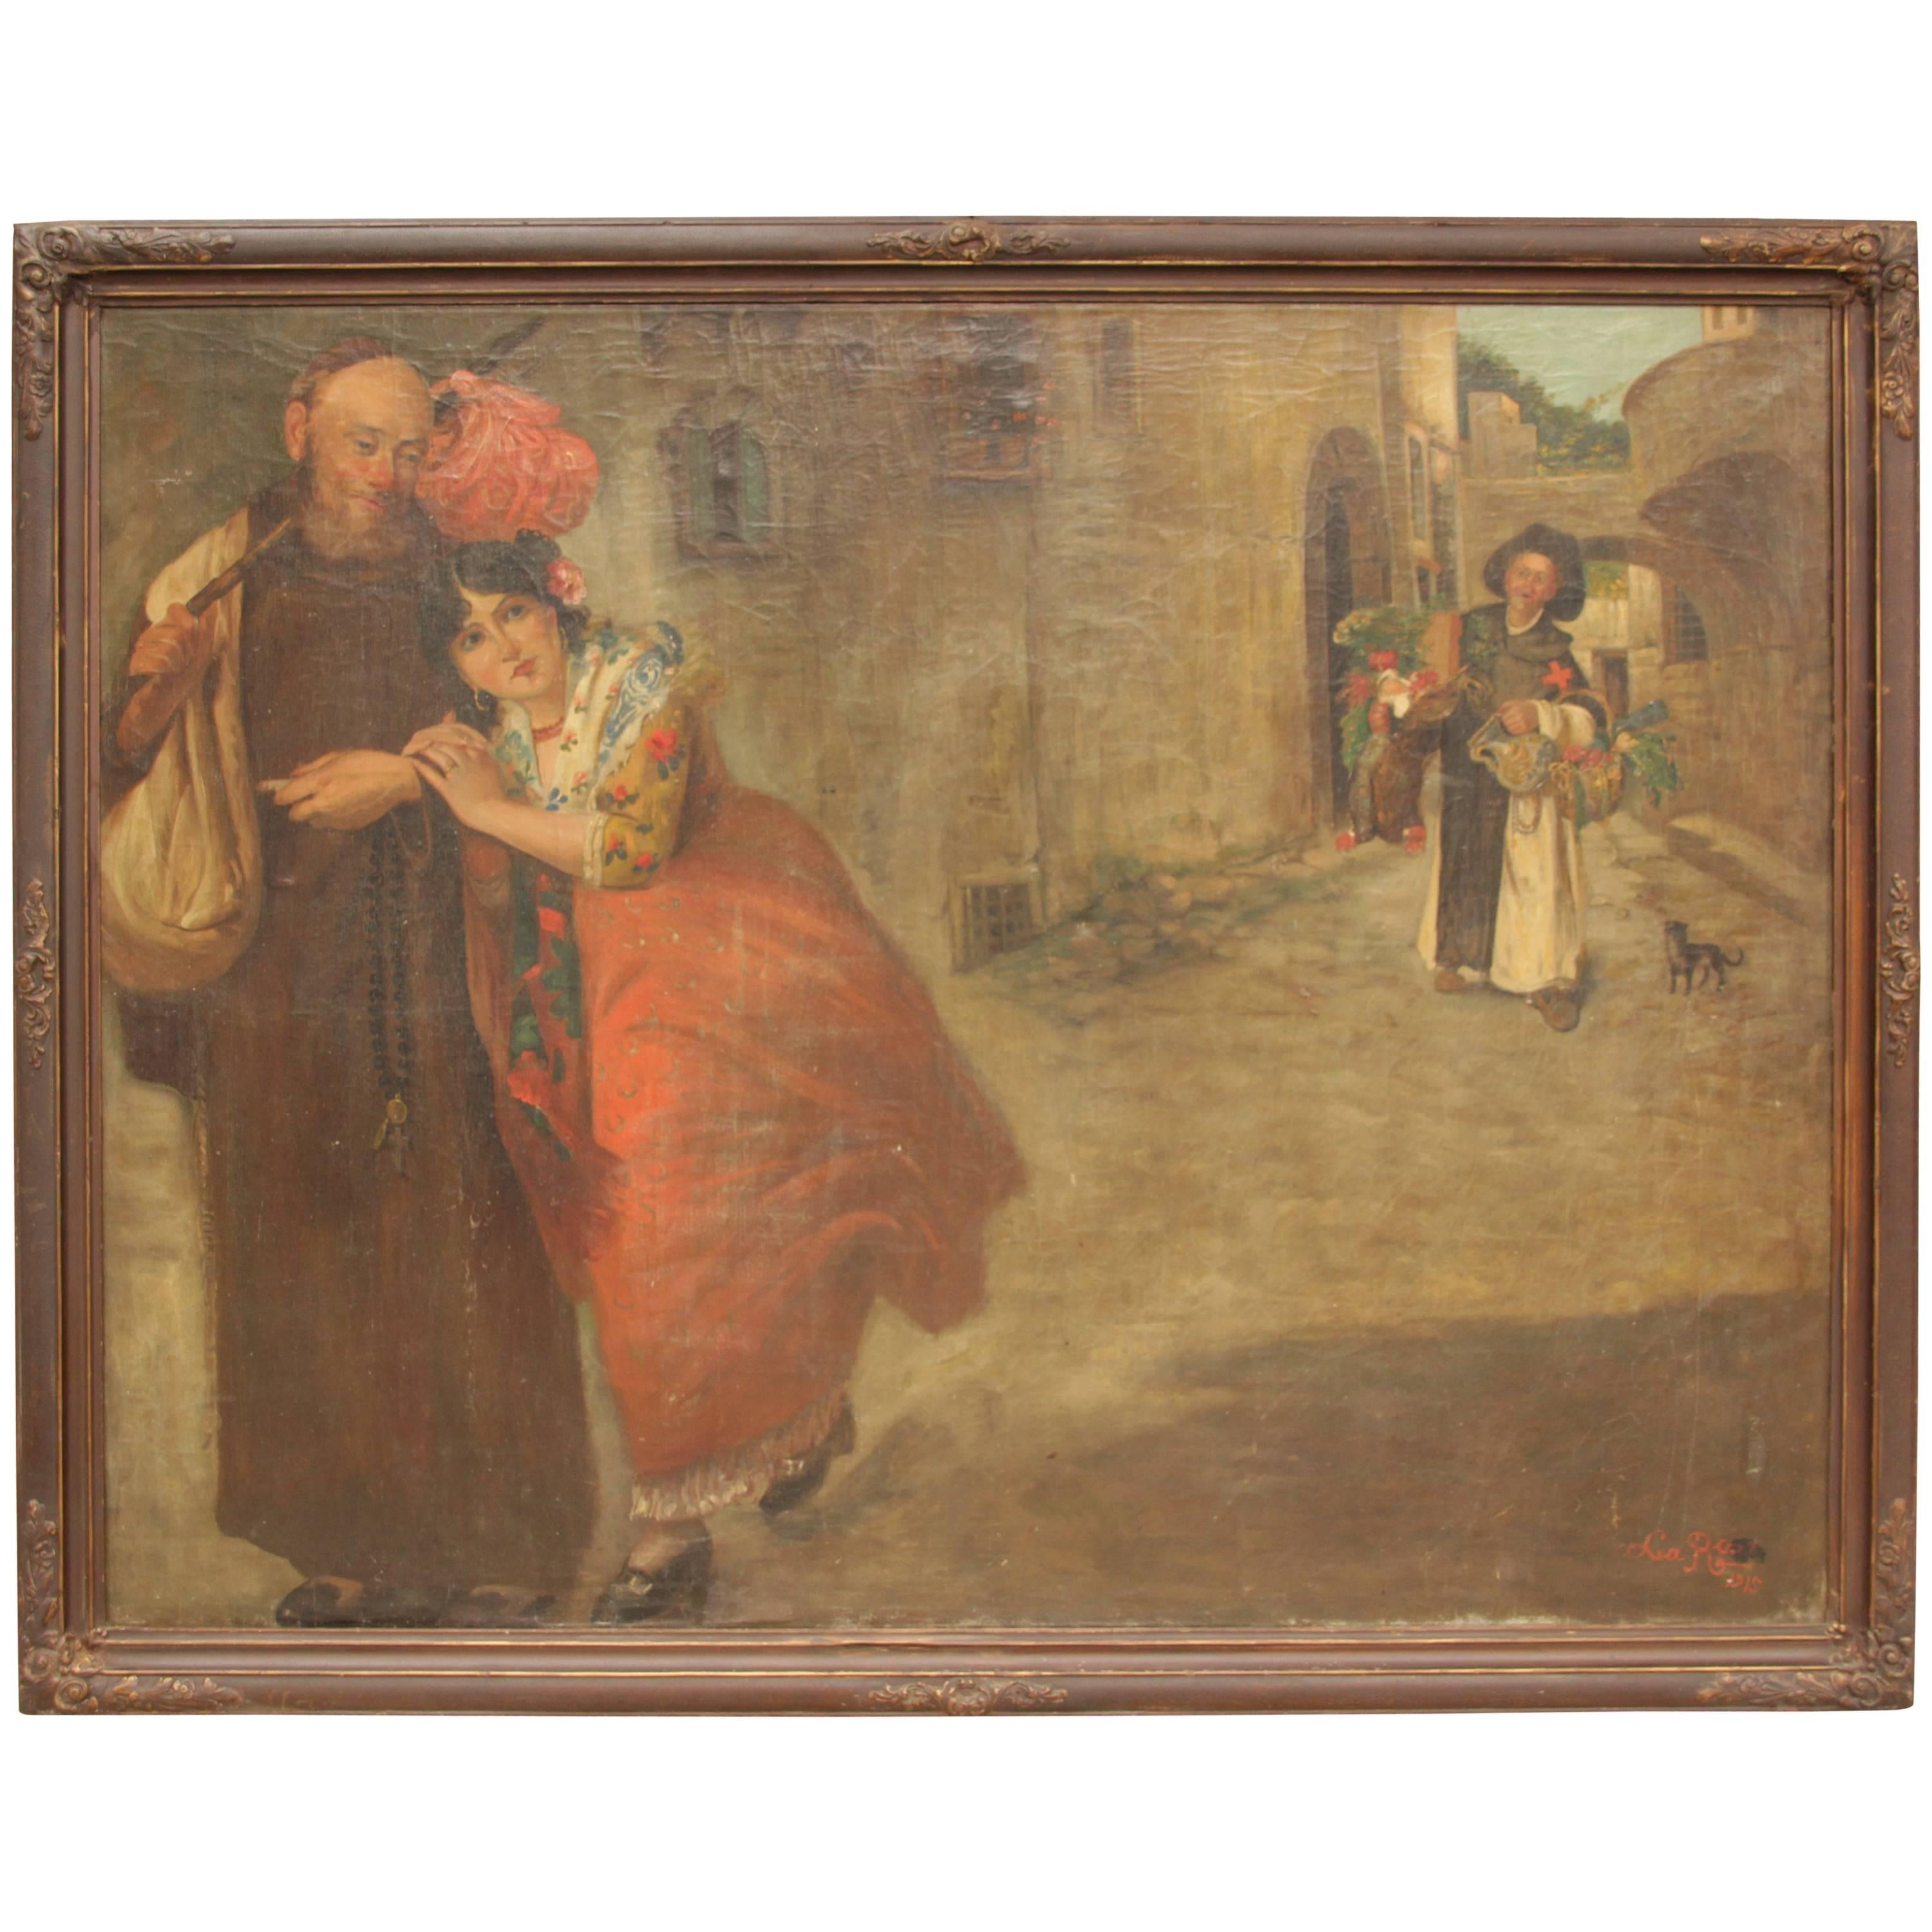 Rare Turn of the Century Very Large Spanish Painting with Beautiful Signorita